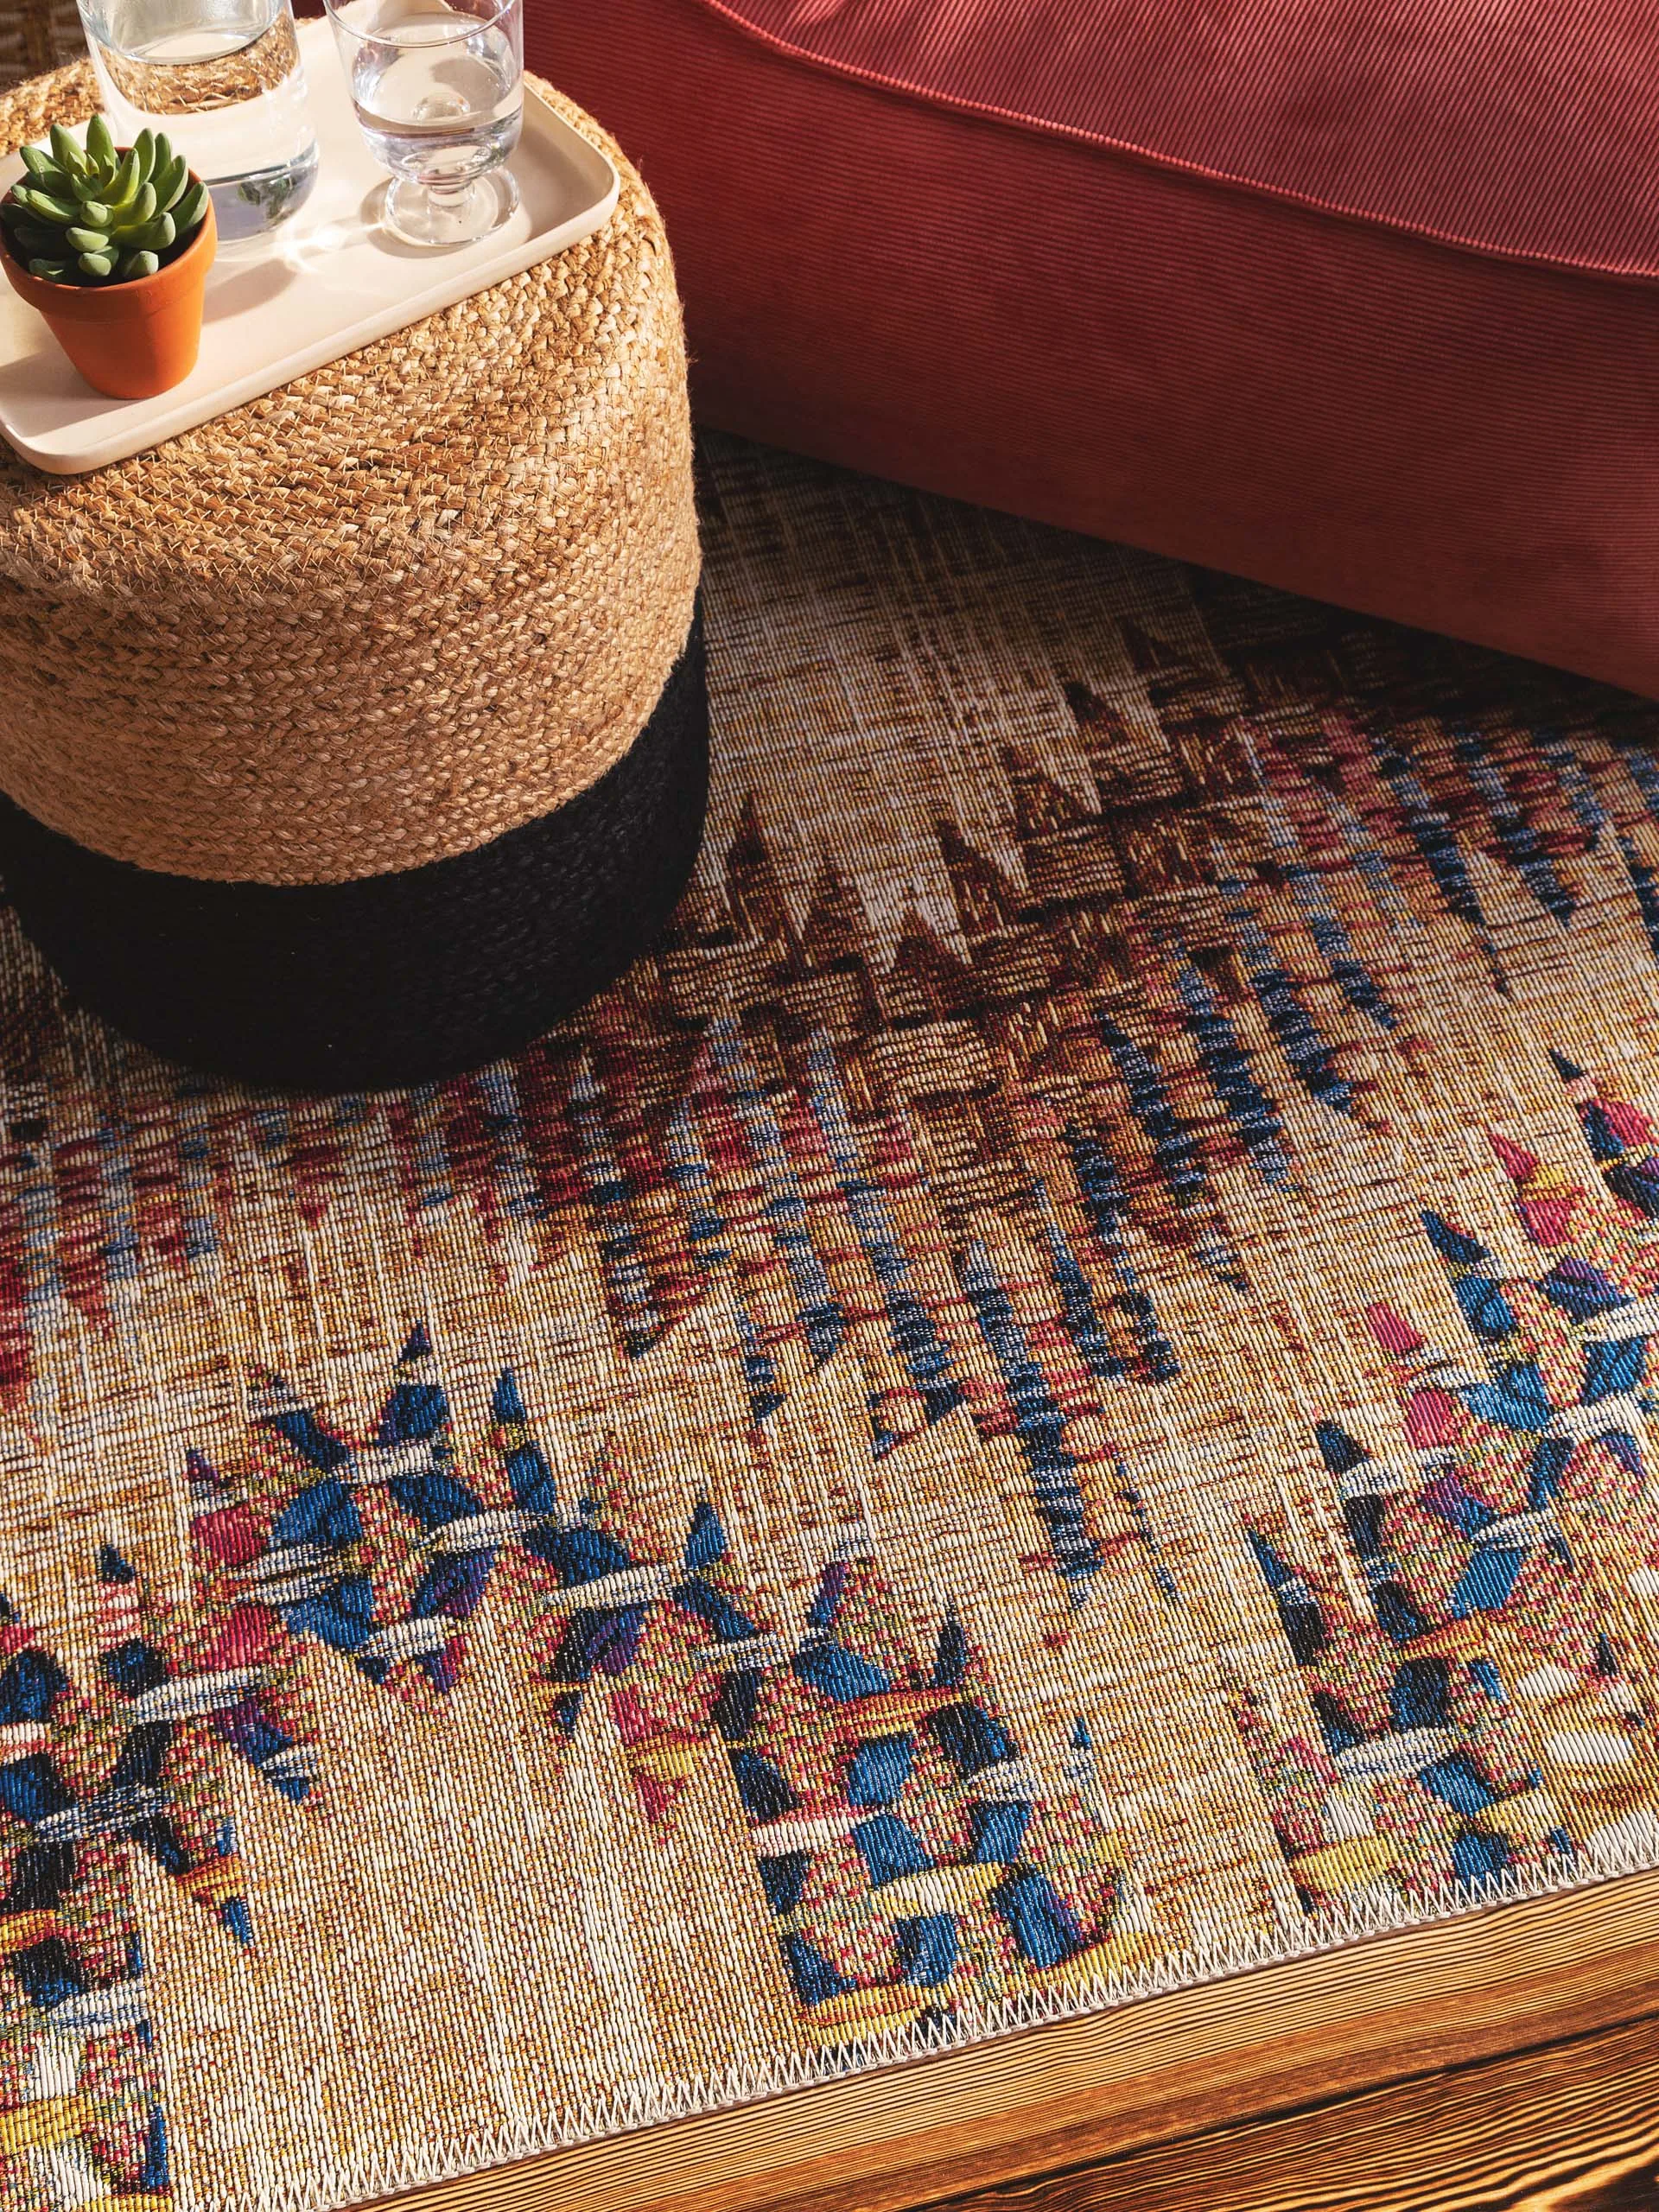 Detailaufnahme von einem Outdoor-Teppich im bunten Kelim-Design, auf dem ein Pouf aus Jute mit Tablett und einem Glas Wasser steht